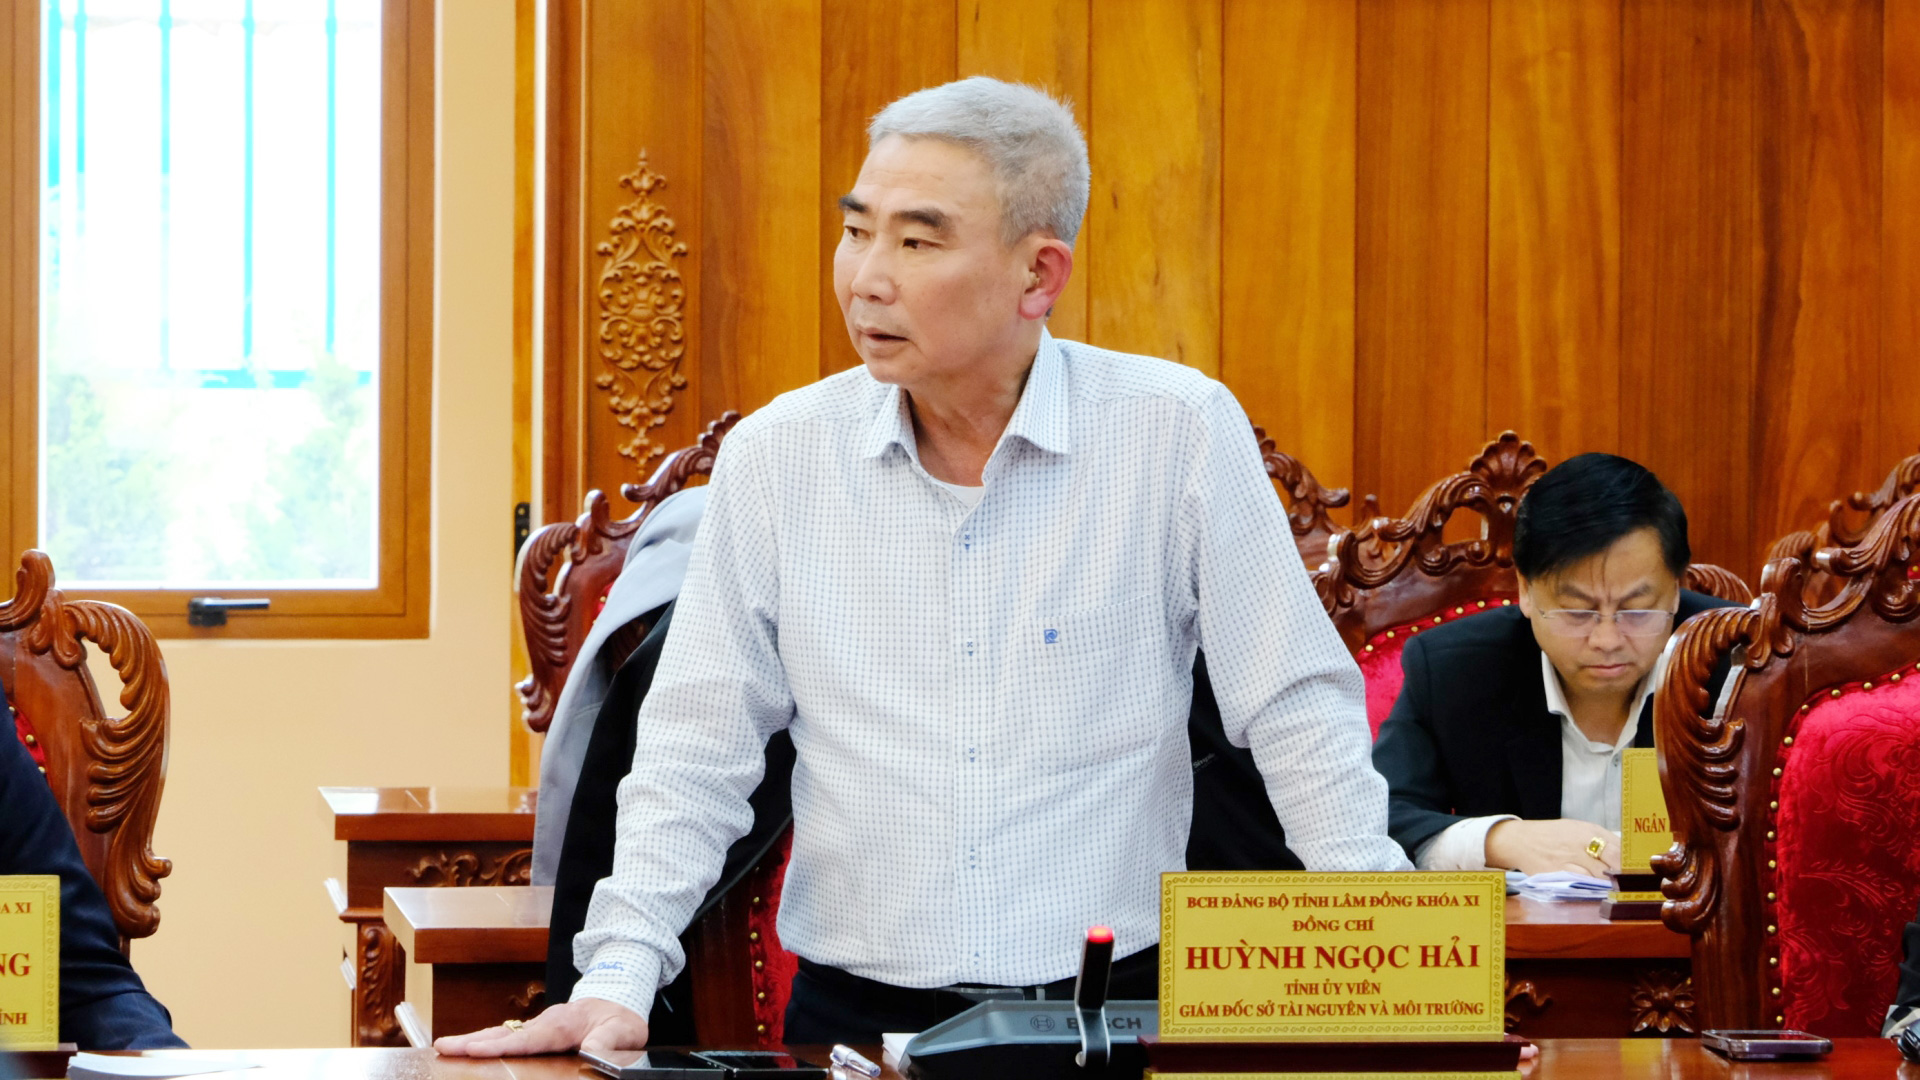 Giám đốc Sở Tài nguyên và Môi trường Huỳnh Ngọc Hải phát biểu tại Hội nghị